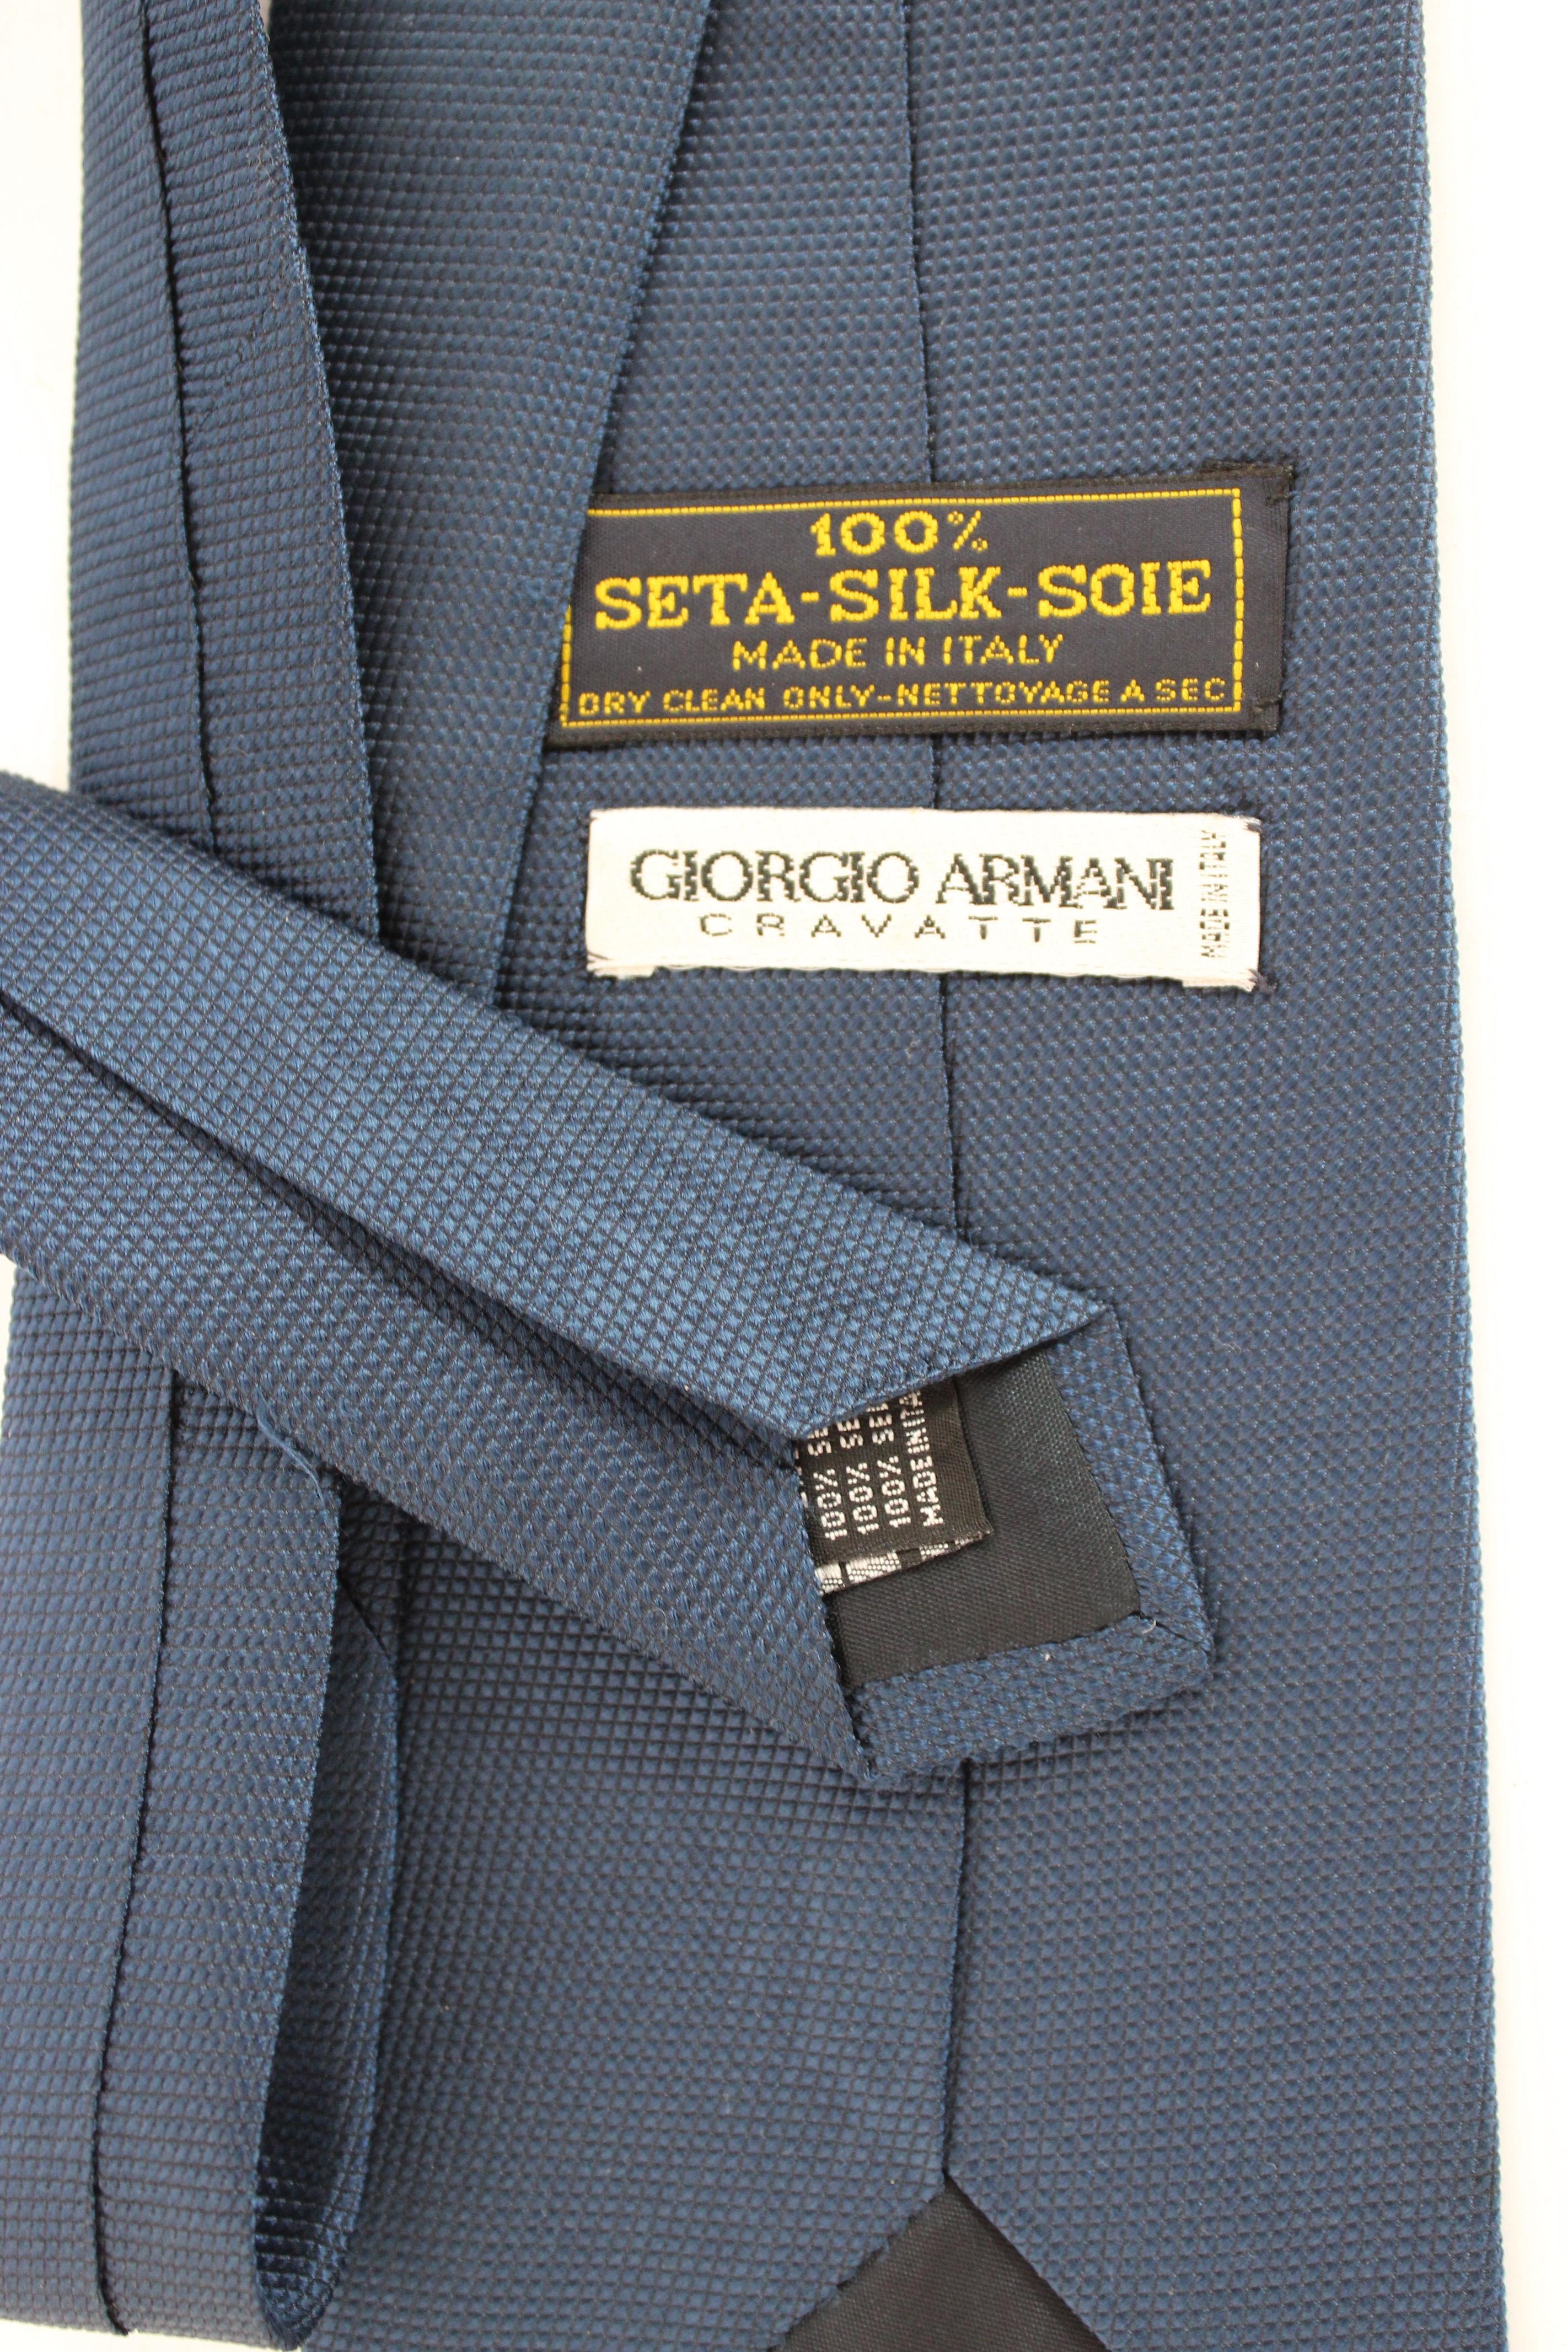 Giorgio Armani Blue Silk Classic Tie In Excellent Condition For Sale In Brindisi, Bt